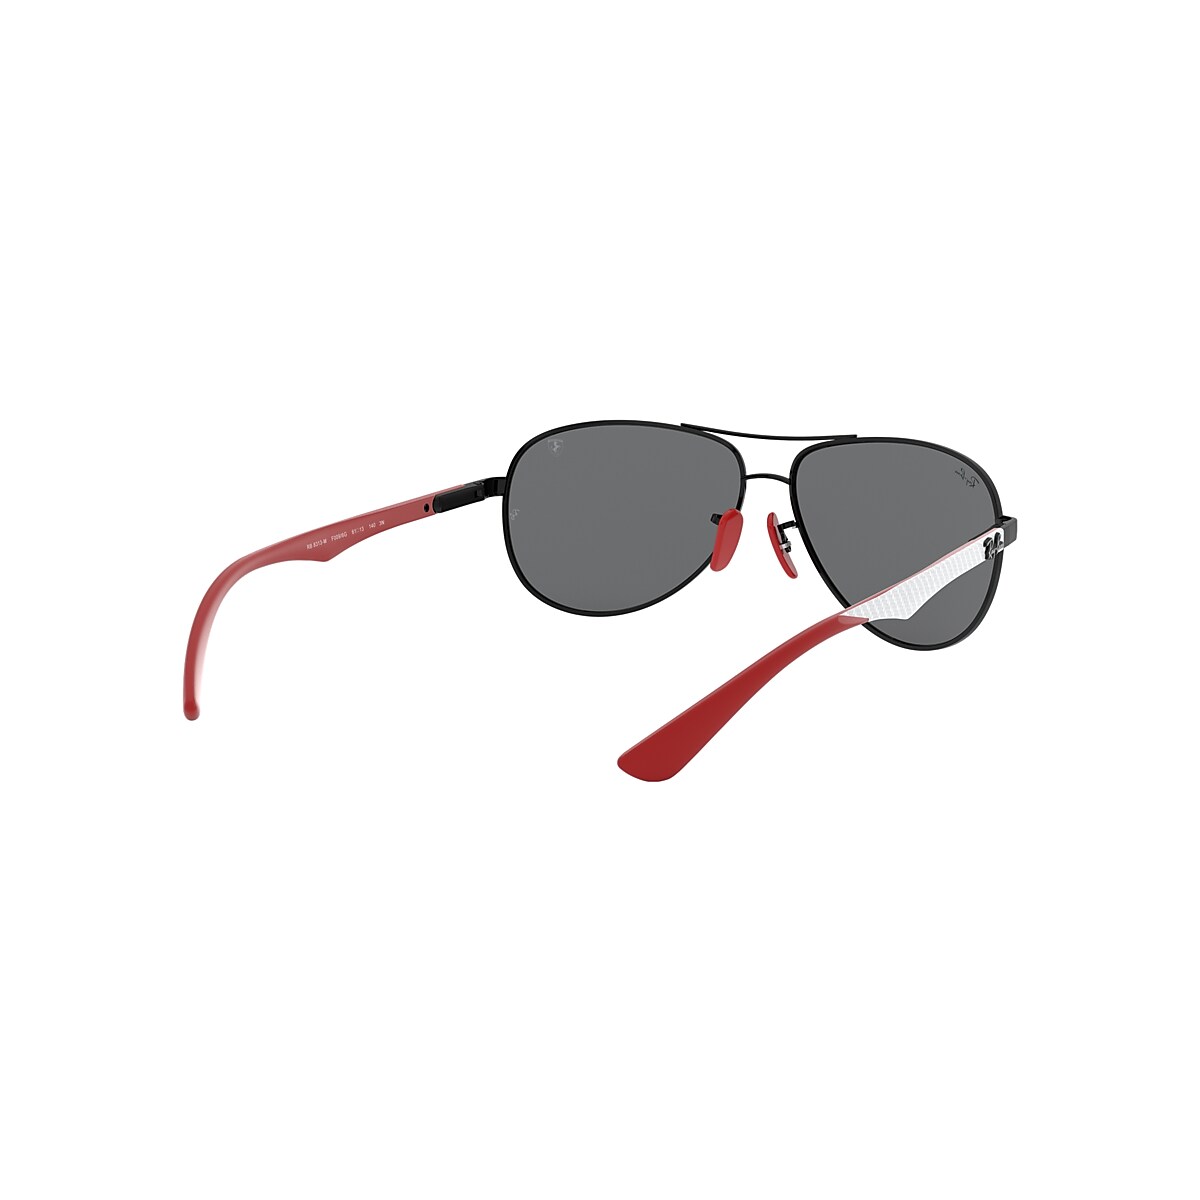 Rb8313m Scuderia Ferrari Collection Sunglasses in Black and Grey 